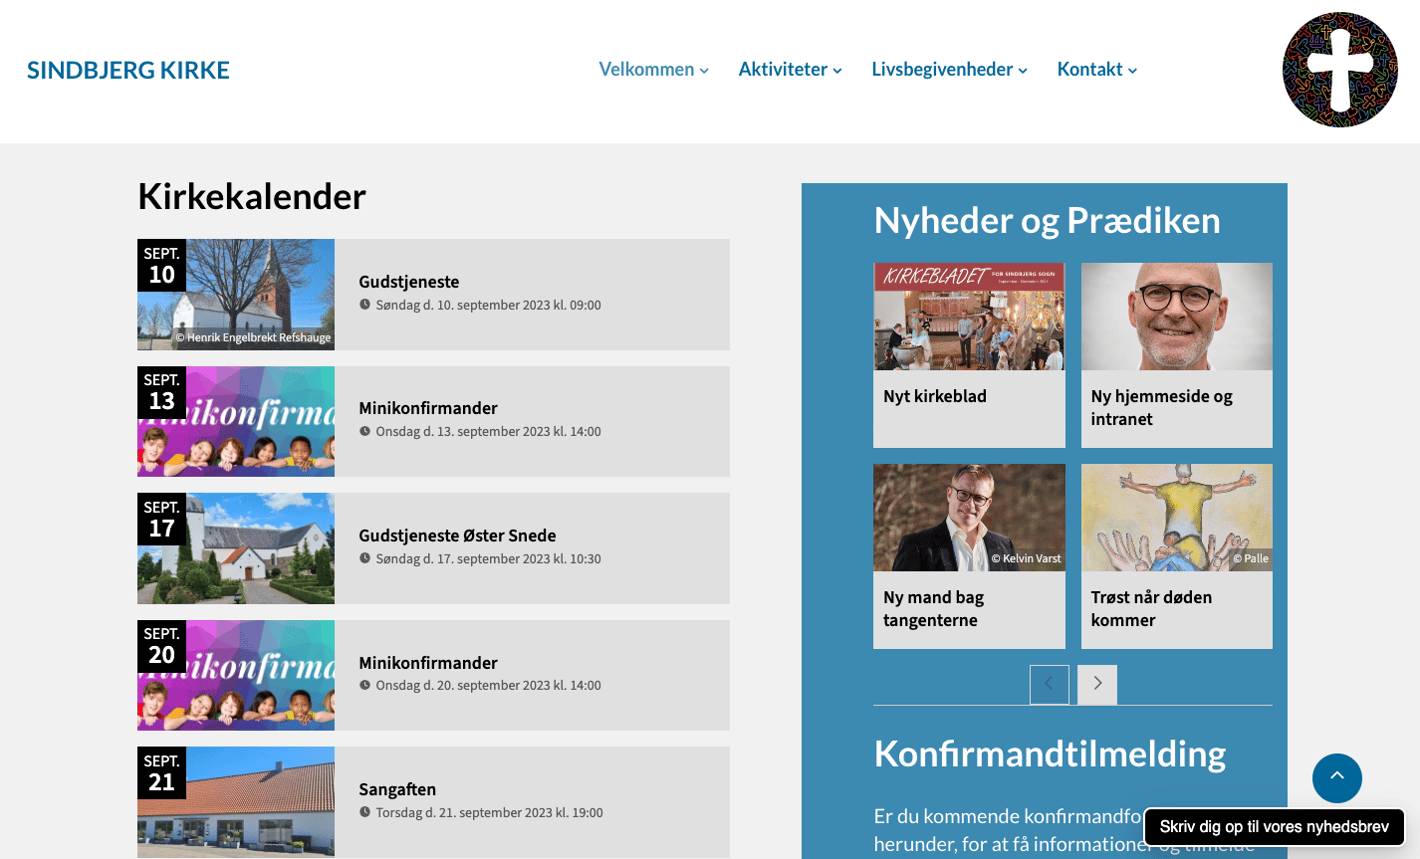 Sindbjerg kirkens hjemmeside